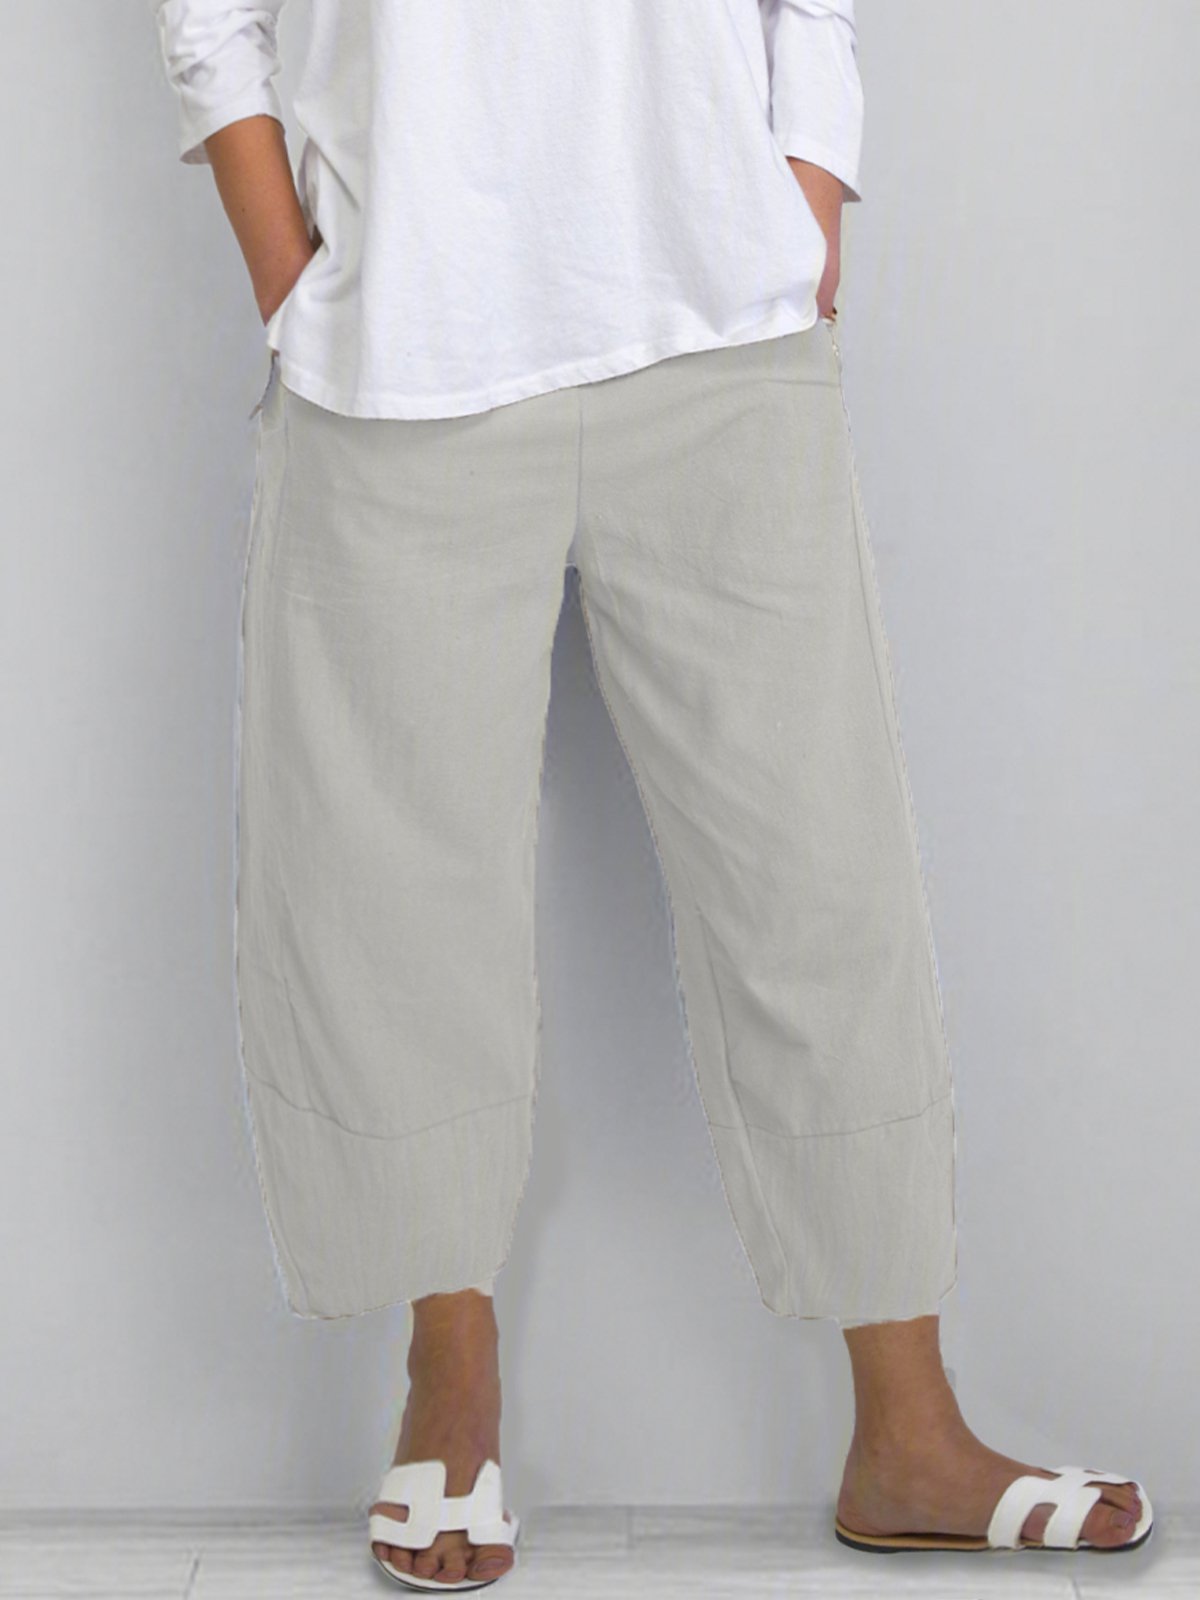 Plus Rozmiar Przyciąć Spodnie Damskie Jednolity Kolor Z kieszenią Spodnie